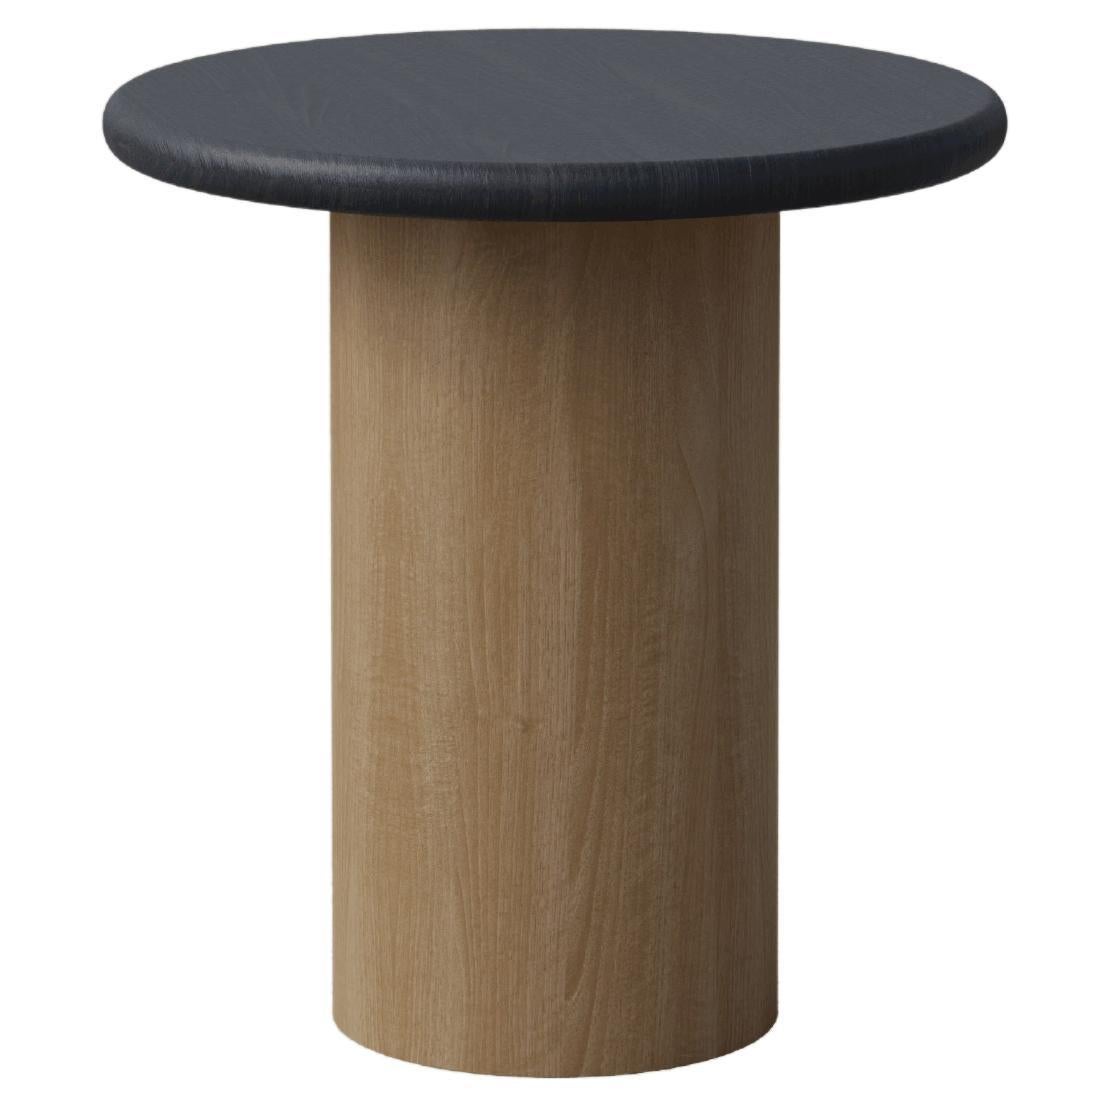 Raindrop Coffee Table, 400, Black Oak / Oak For Sale